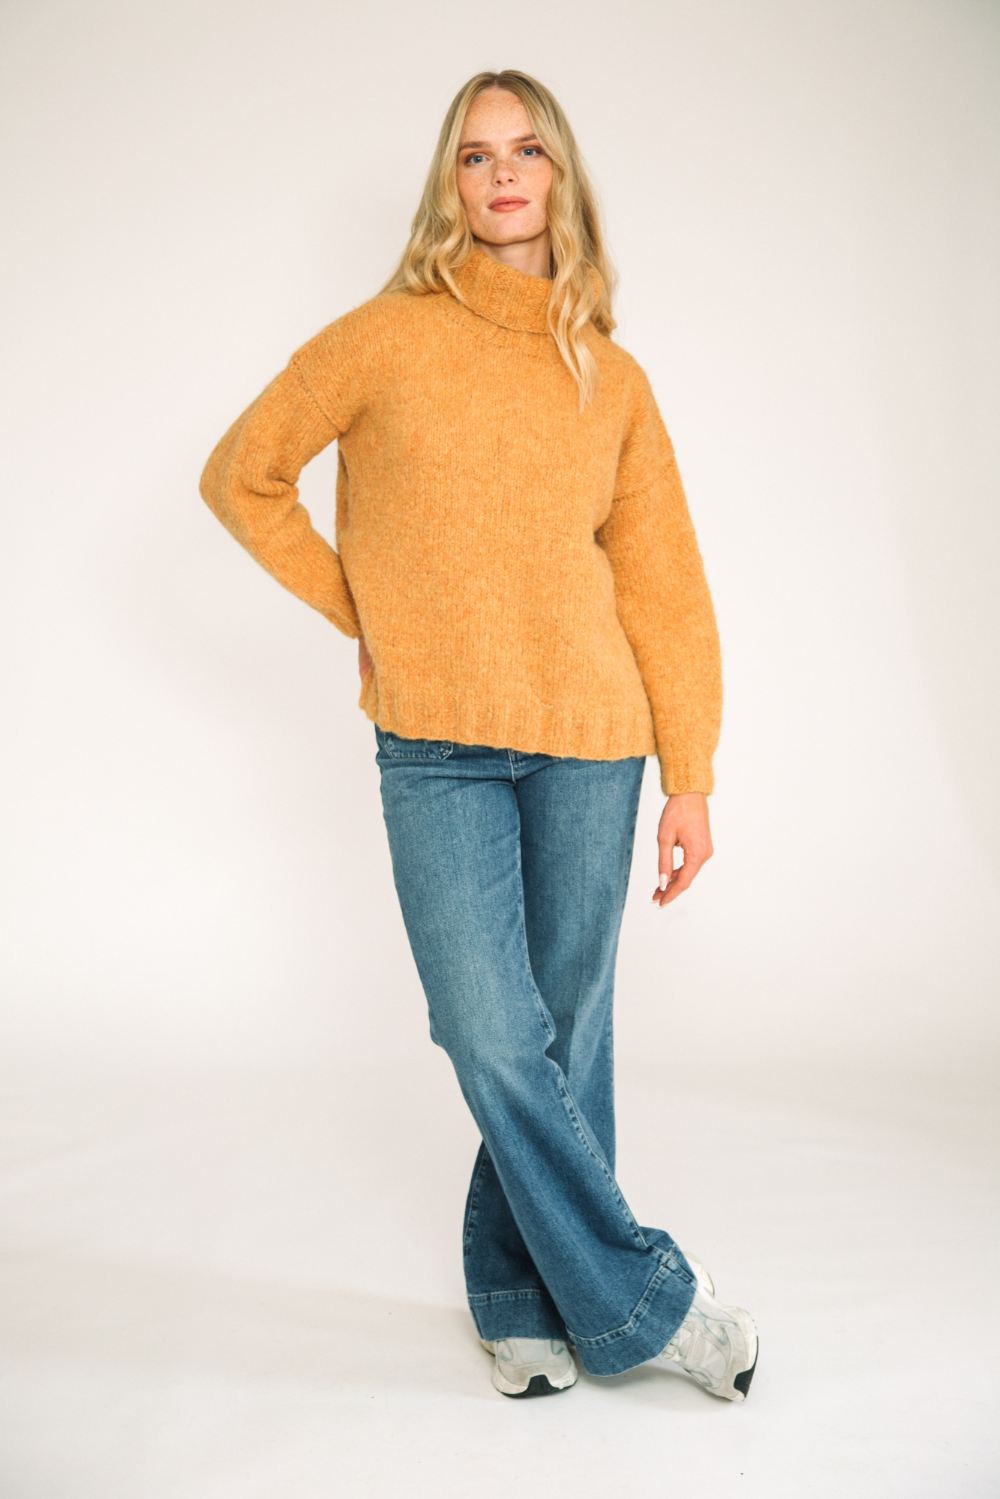 alpaca sweater jumper womens yellow butterscotch